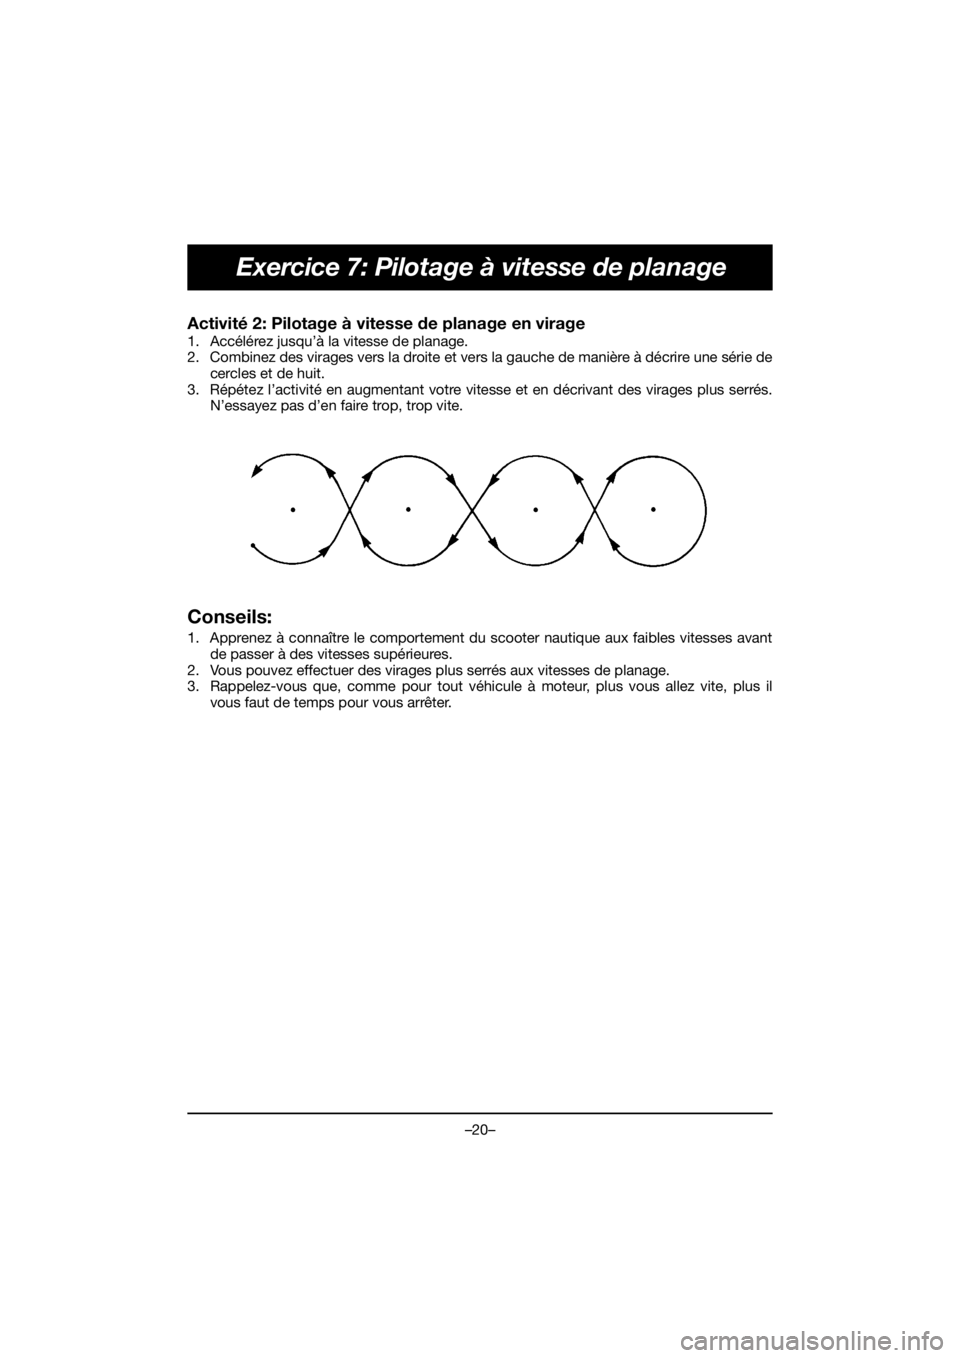 YAMAHA VX DELUXE 2020  Manual de utilização (in Portuguese) –20–
Exercice 7: Pilotage à vitesse de planage
Activité 2: Pilotage à vitesse de planage en virage 
1. Accélérez jusqu’à la vitesse de planage. 
2. Combinez des virages vers la droite et v